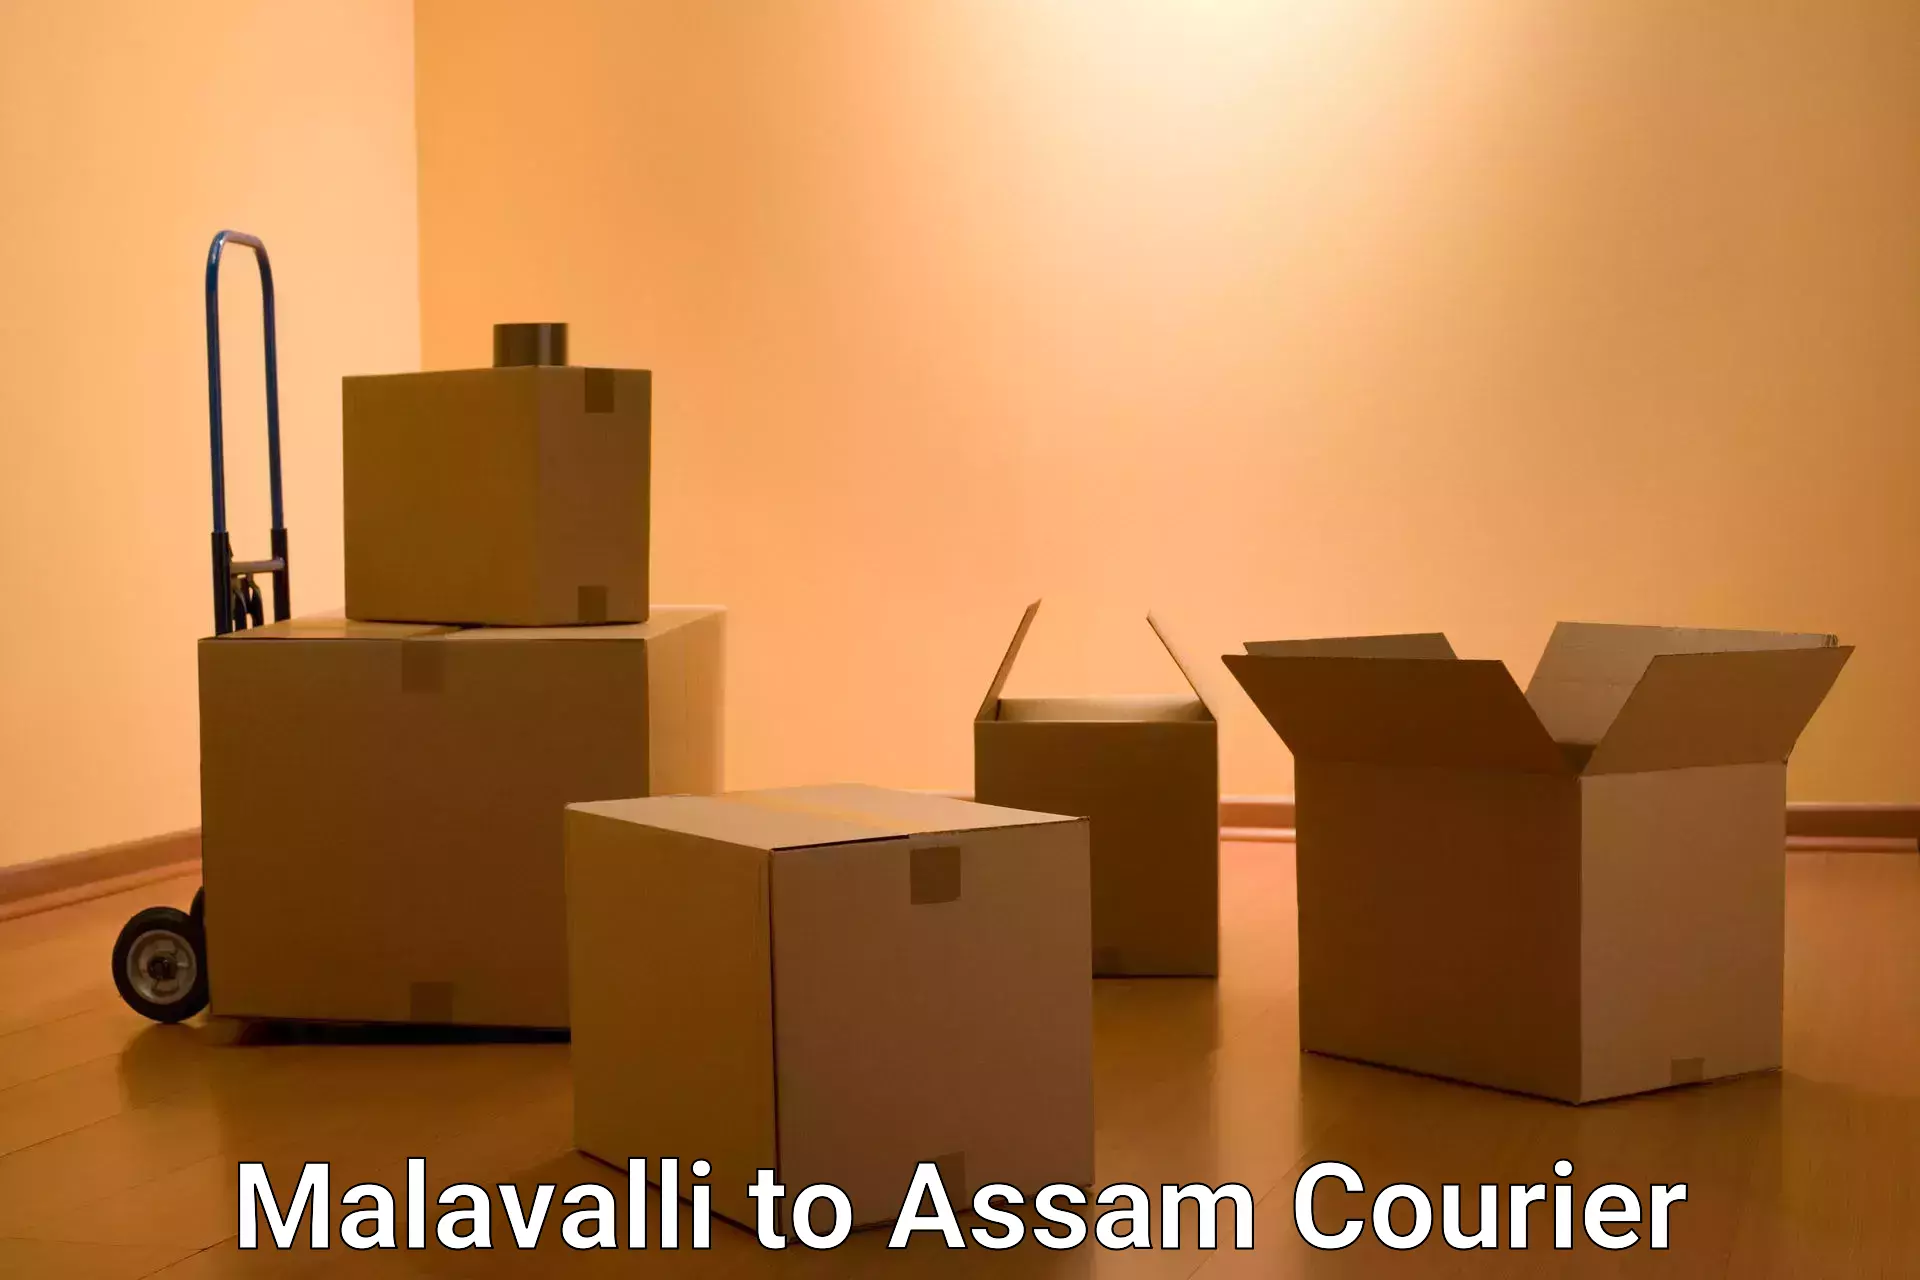 24/7 courier service Malavalli to Dhupdhara